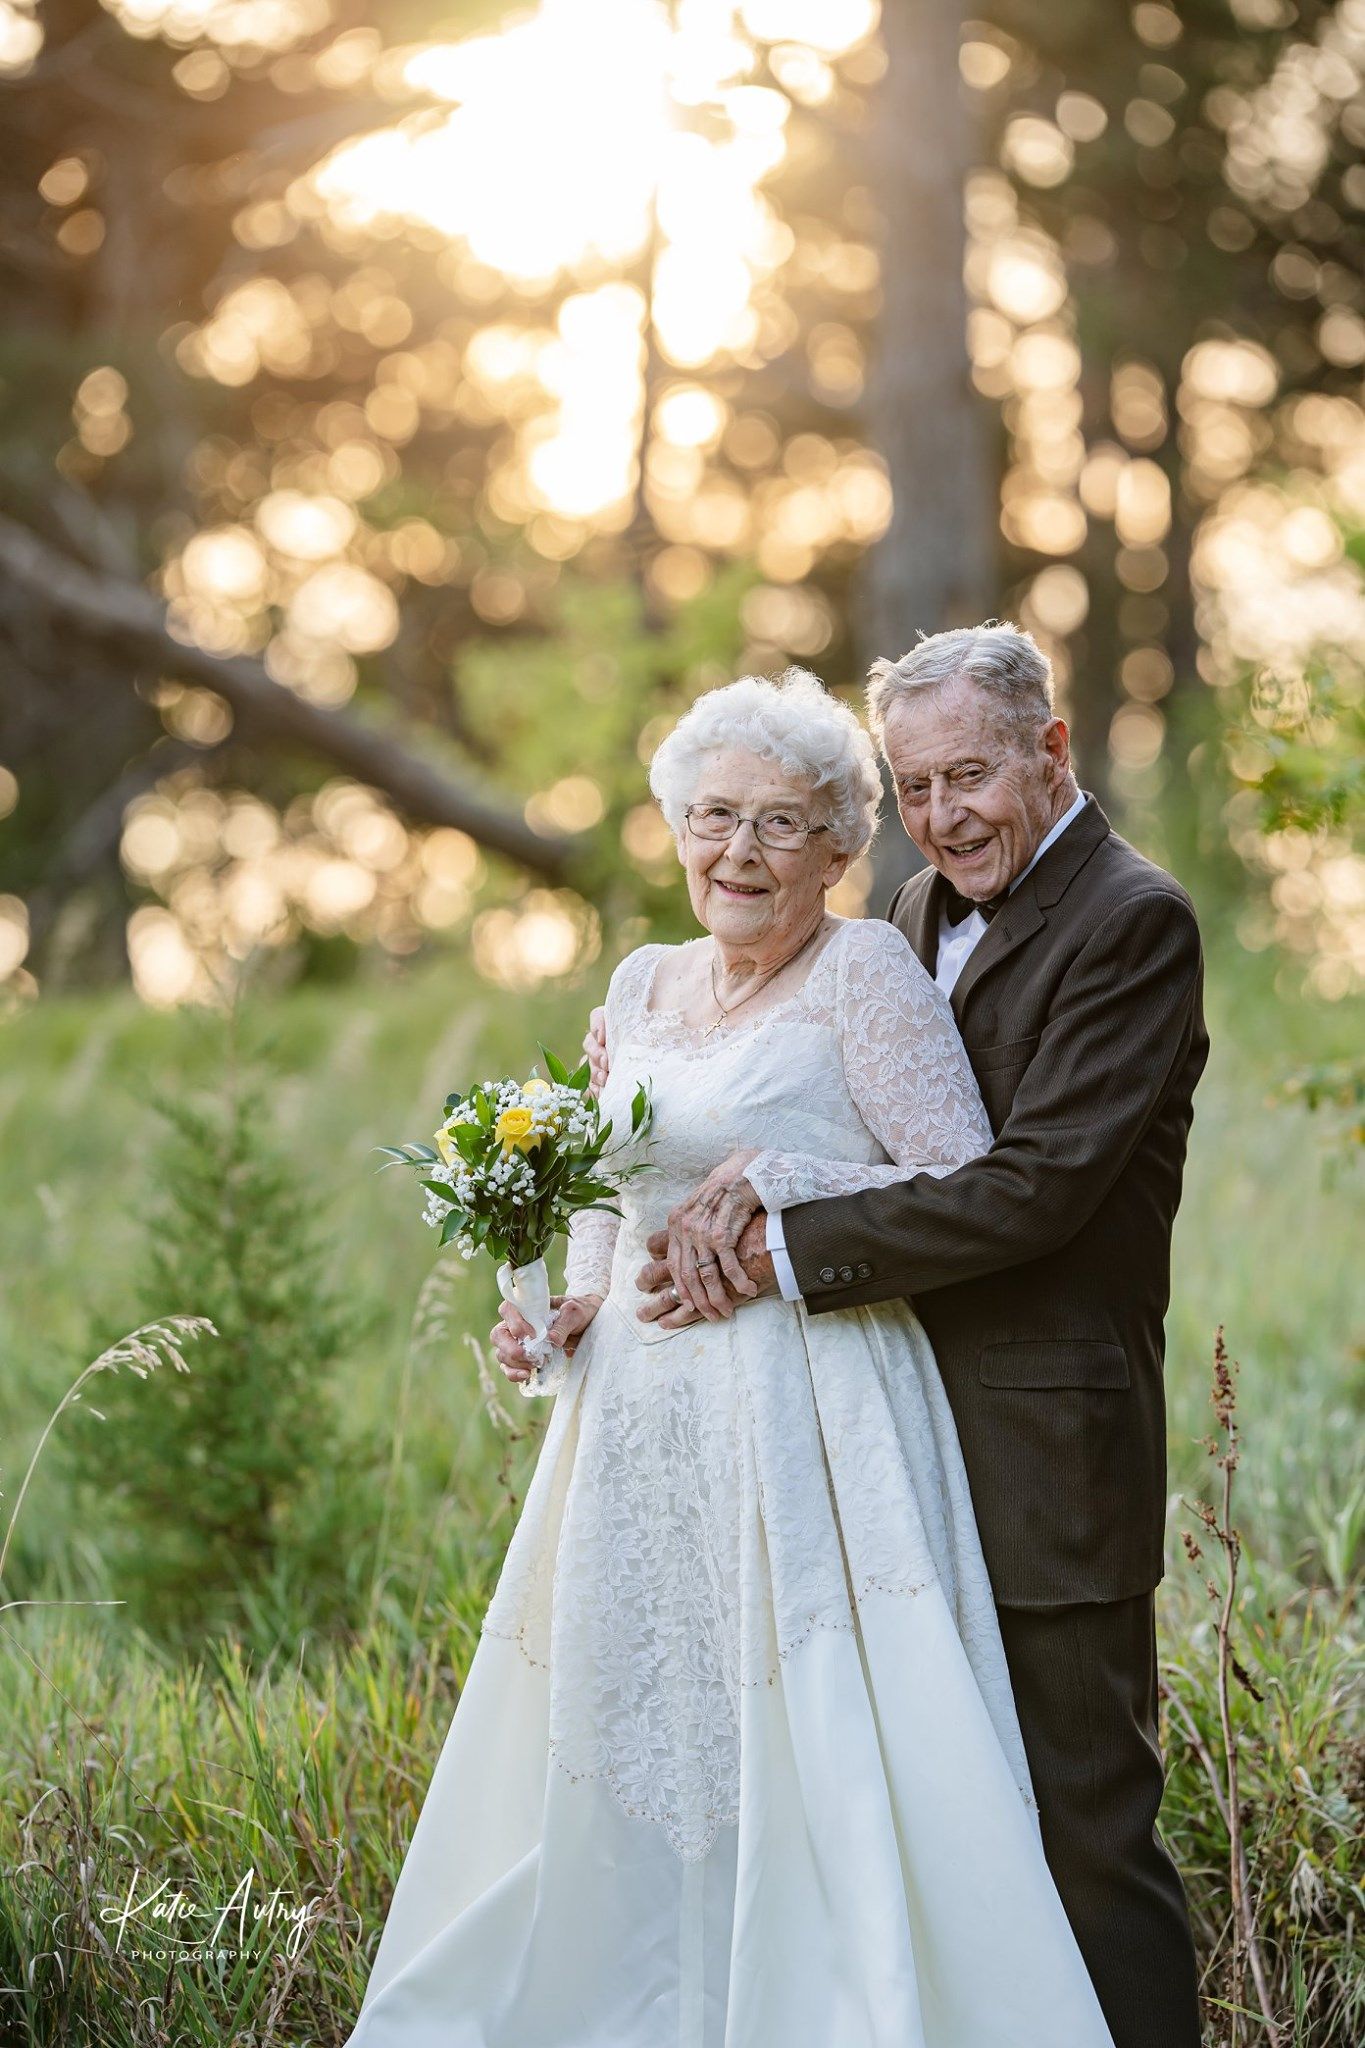 Recrean las fotos de su boda 60 años después y son adorables